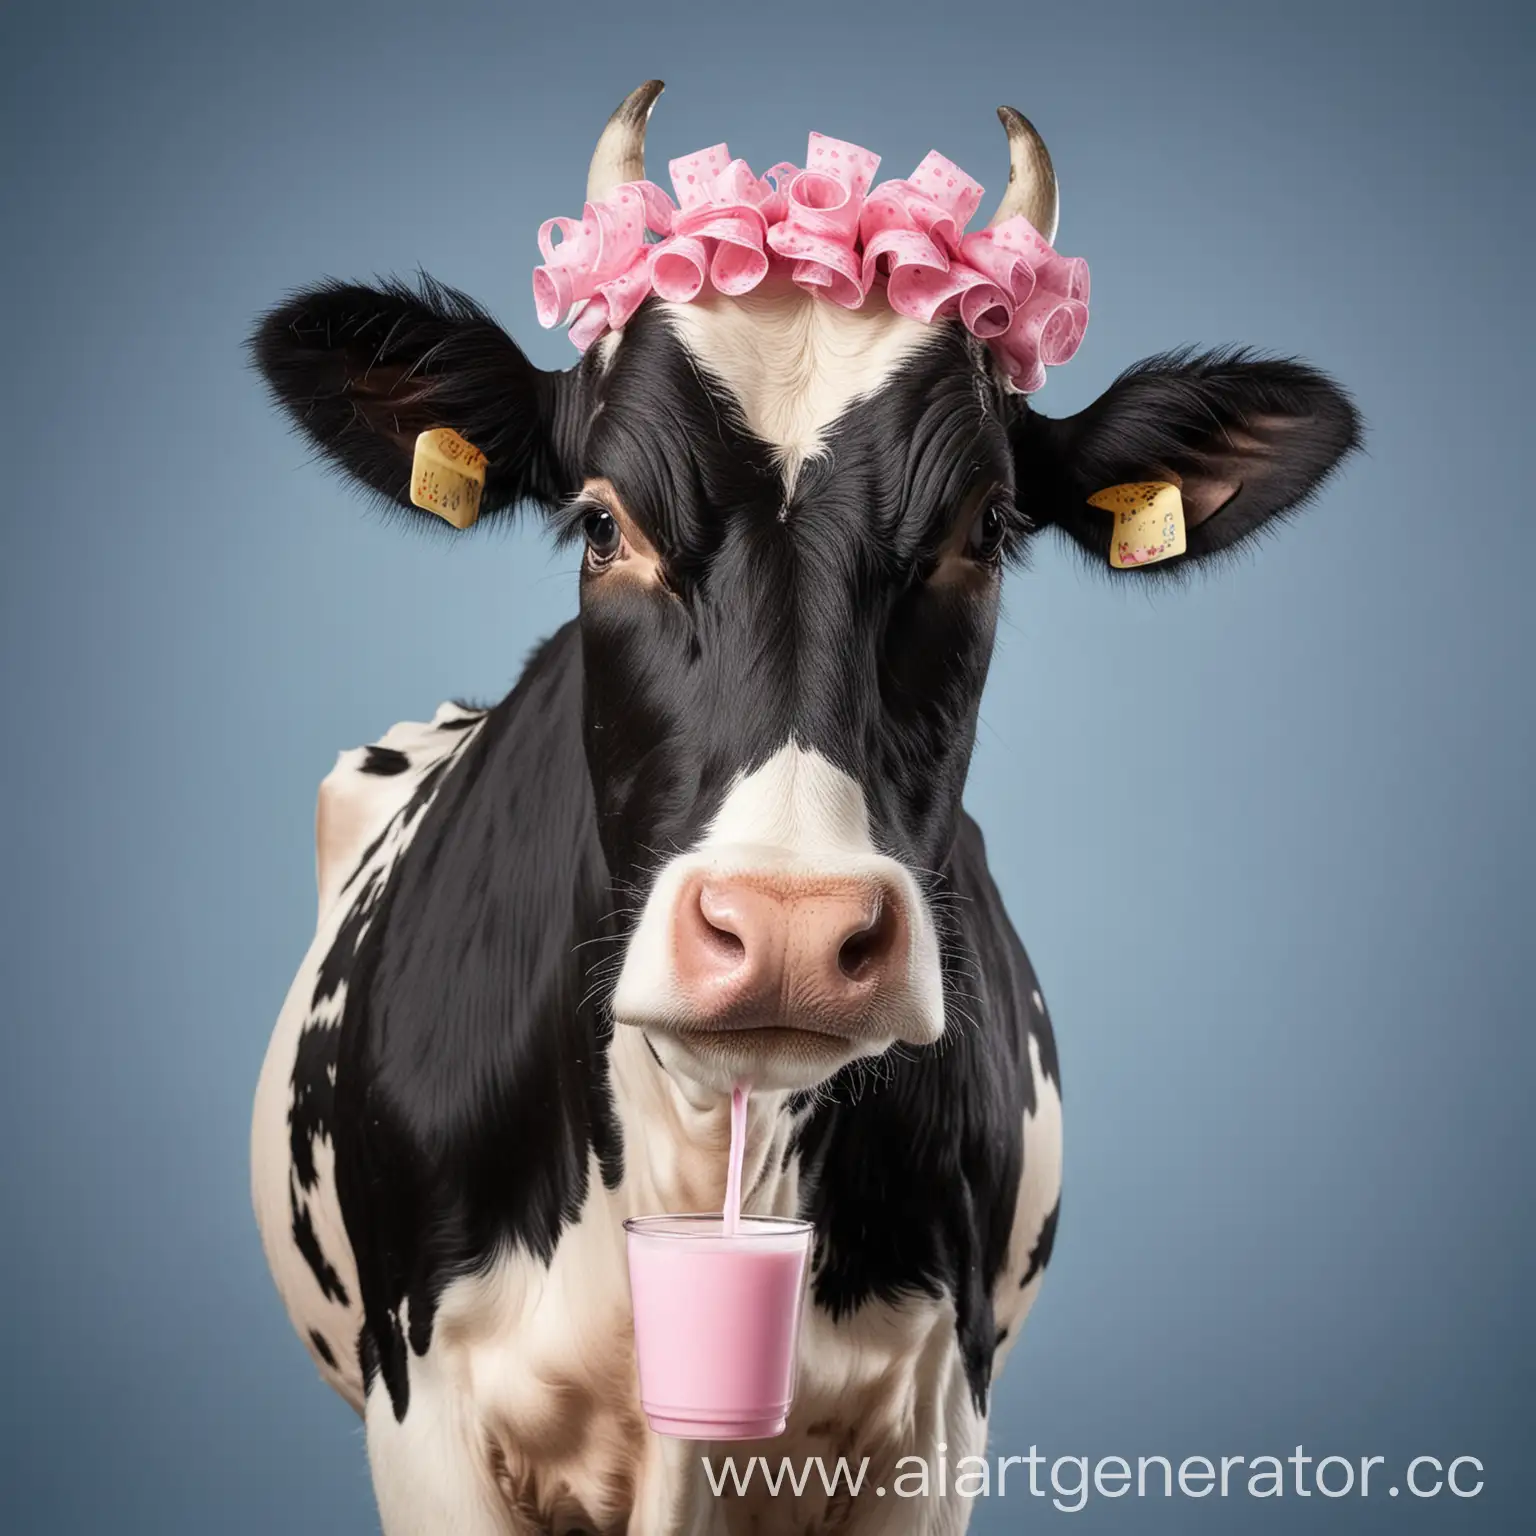 Портрет черно-белой коровы на голубом фоне. Она держит чашку с молоком копытом и пьет из чашки. На ее голове розовые бигуди. У нее длинные ресницы